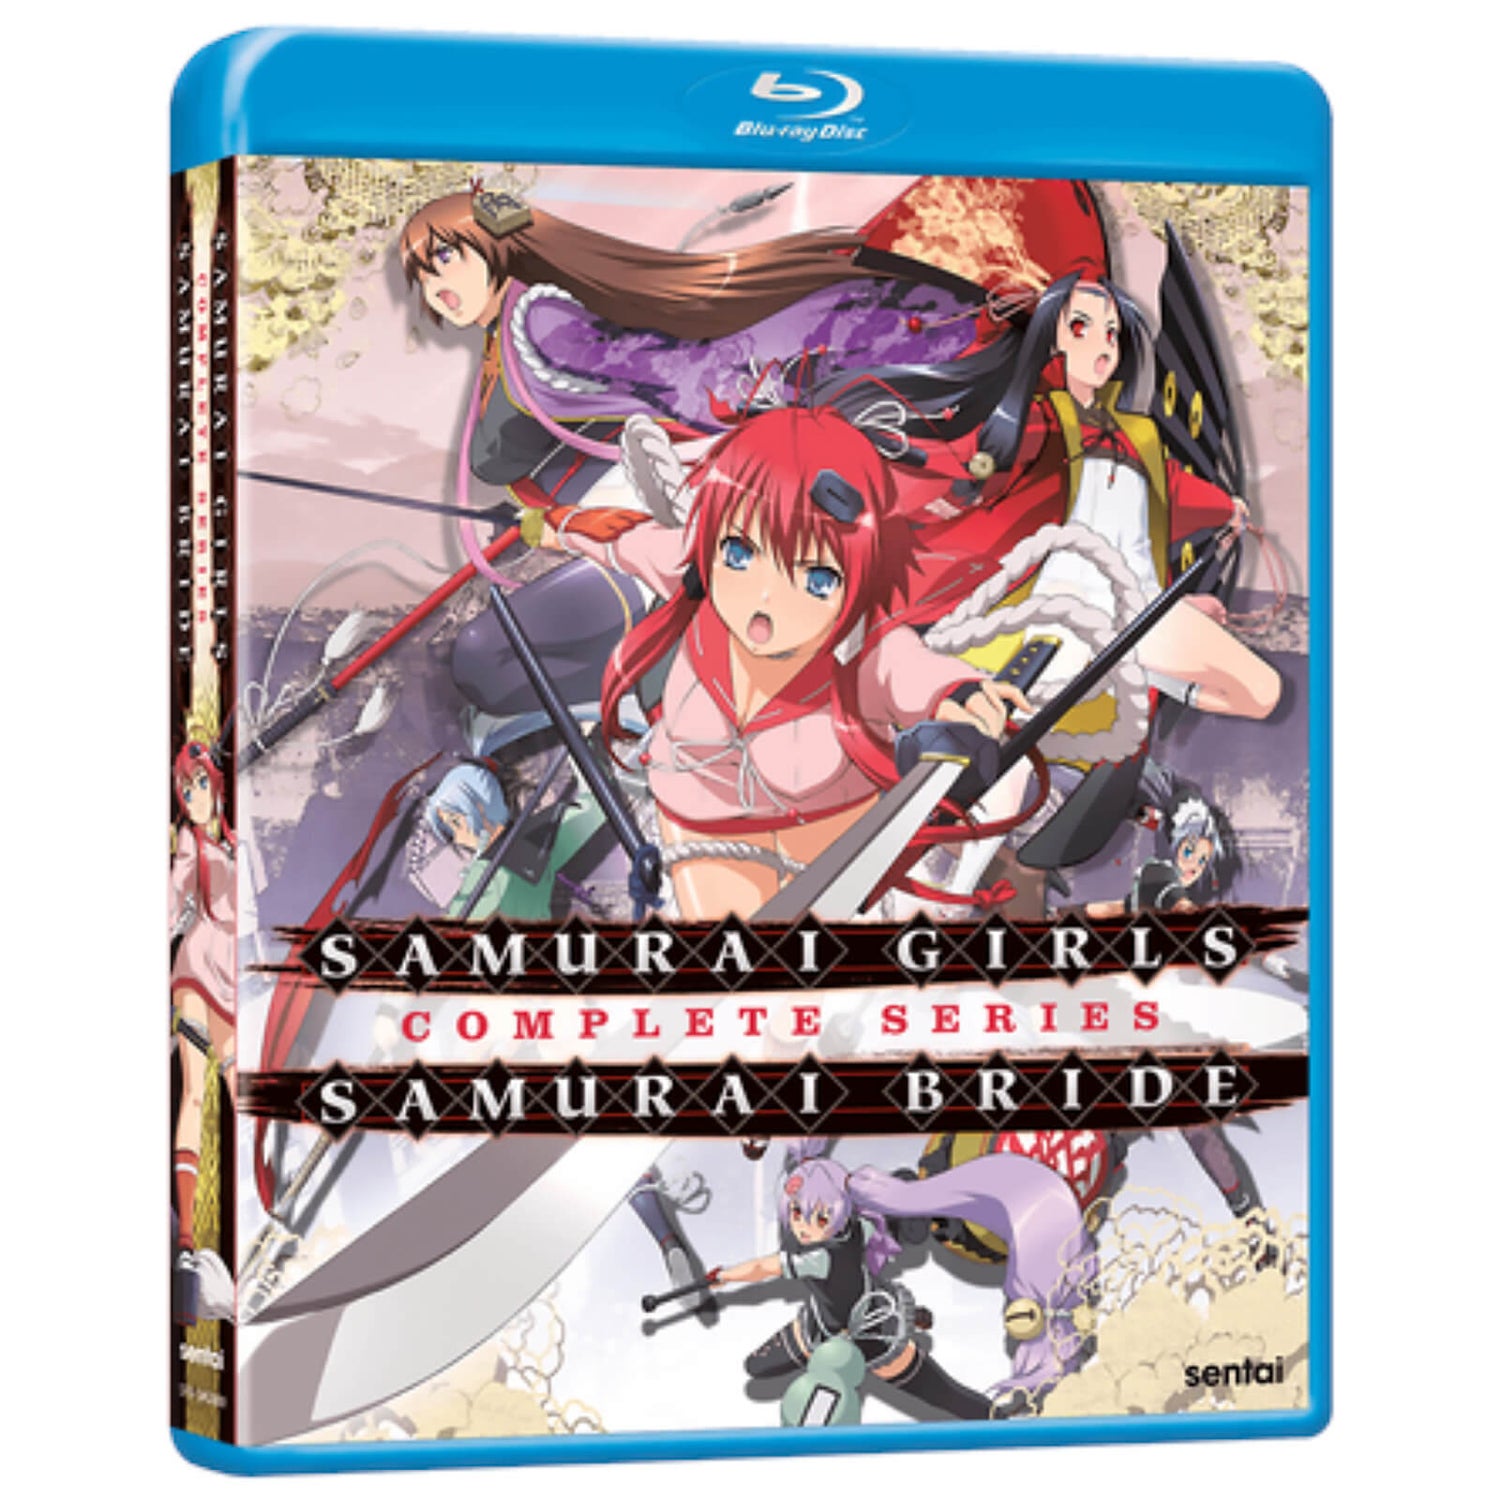 Samurai Girls / Samurai Bride: Complete Series